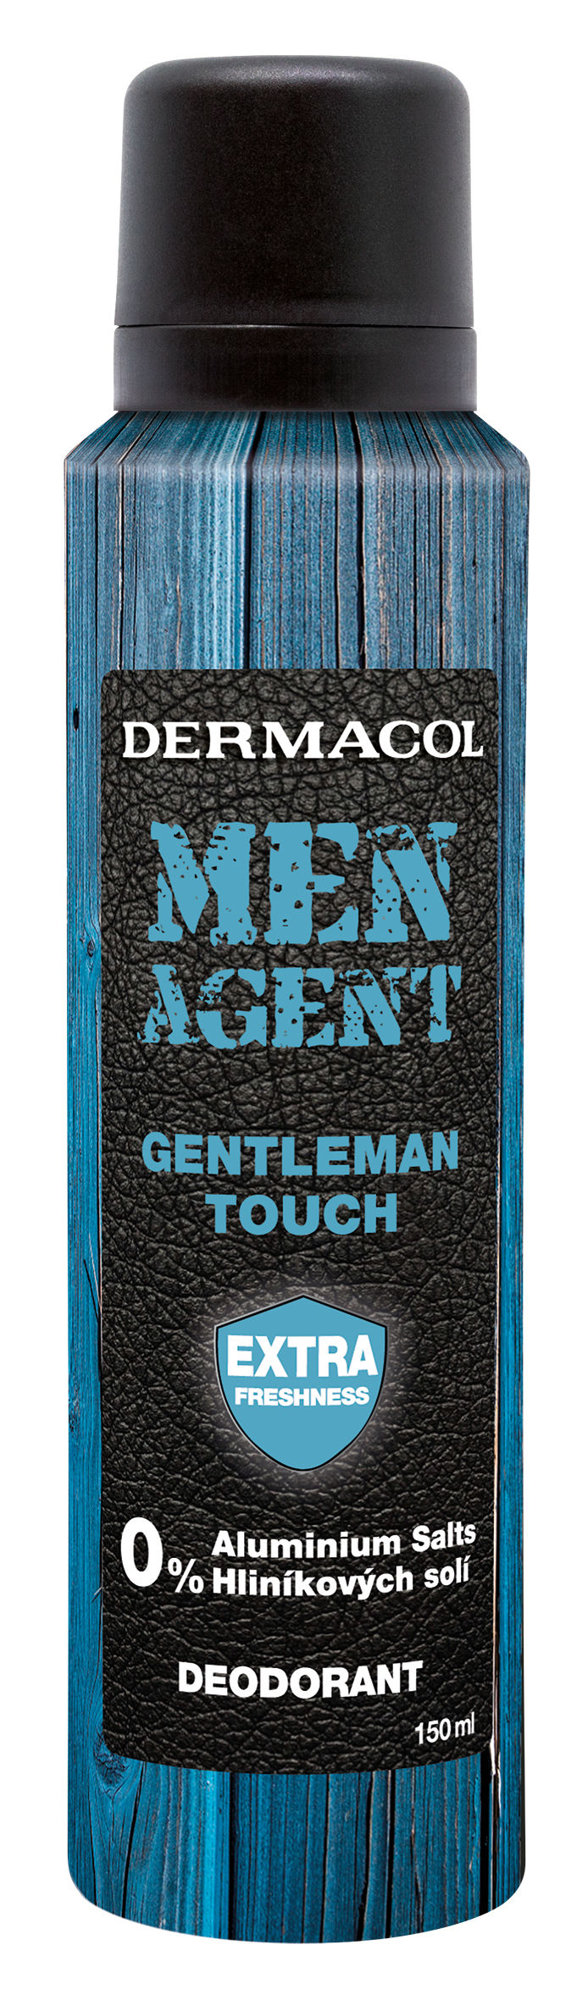 Dermacol Men Agent Gentleman Touch 150ml dezodorantas